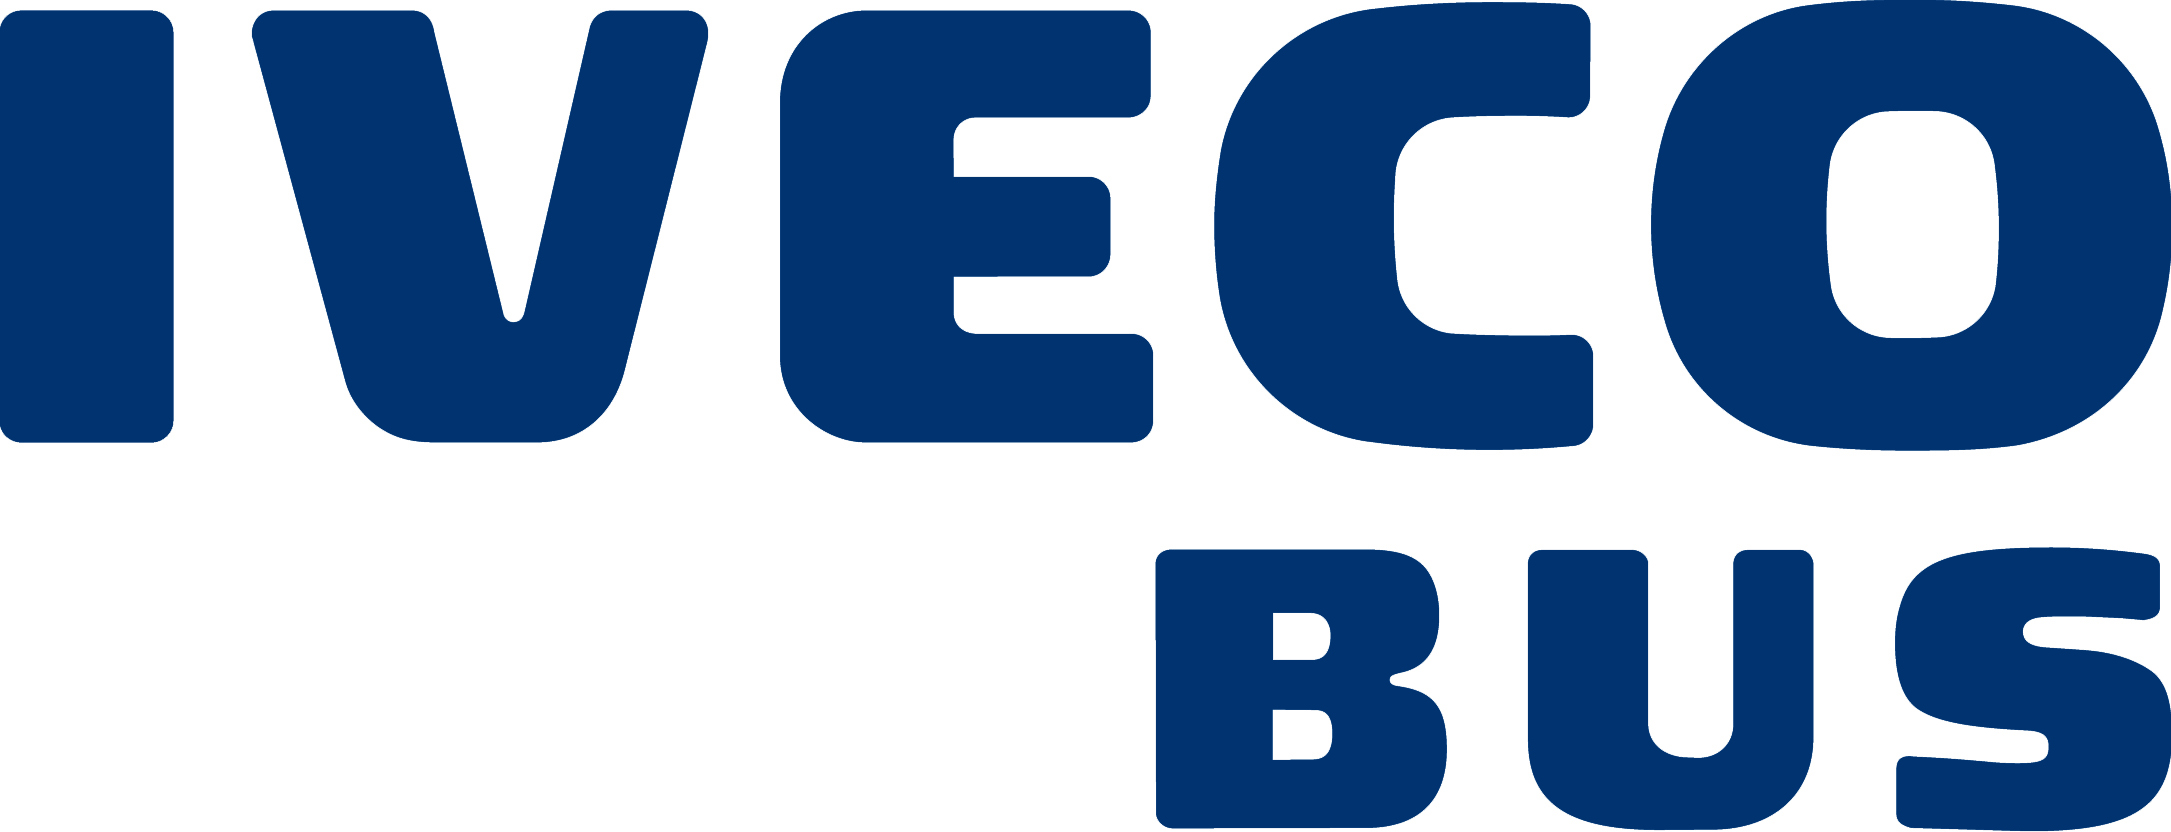 Iveco Bus Blue Logo.jpg